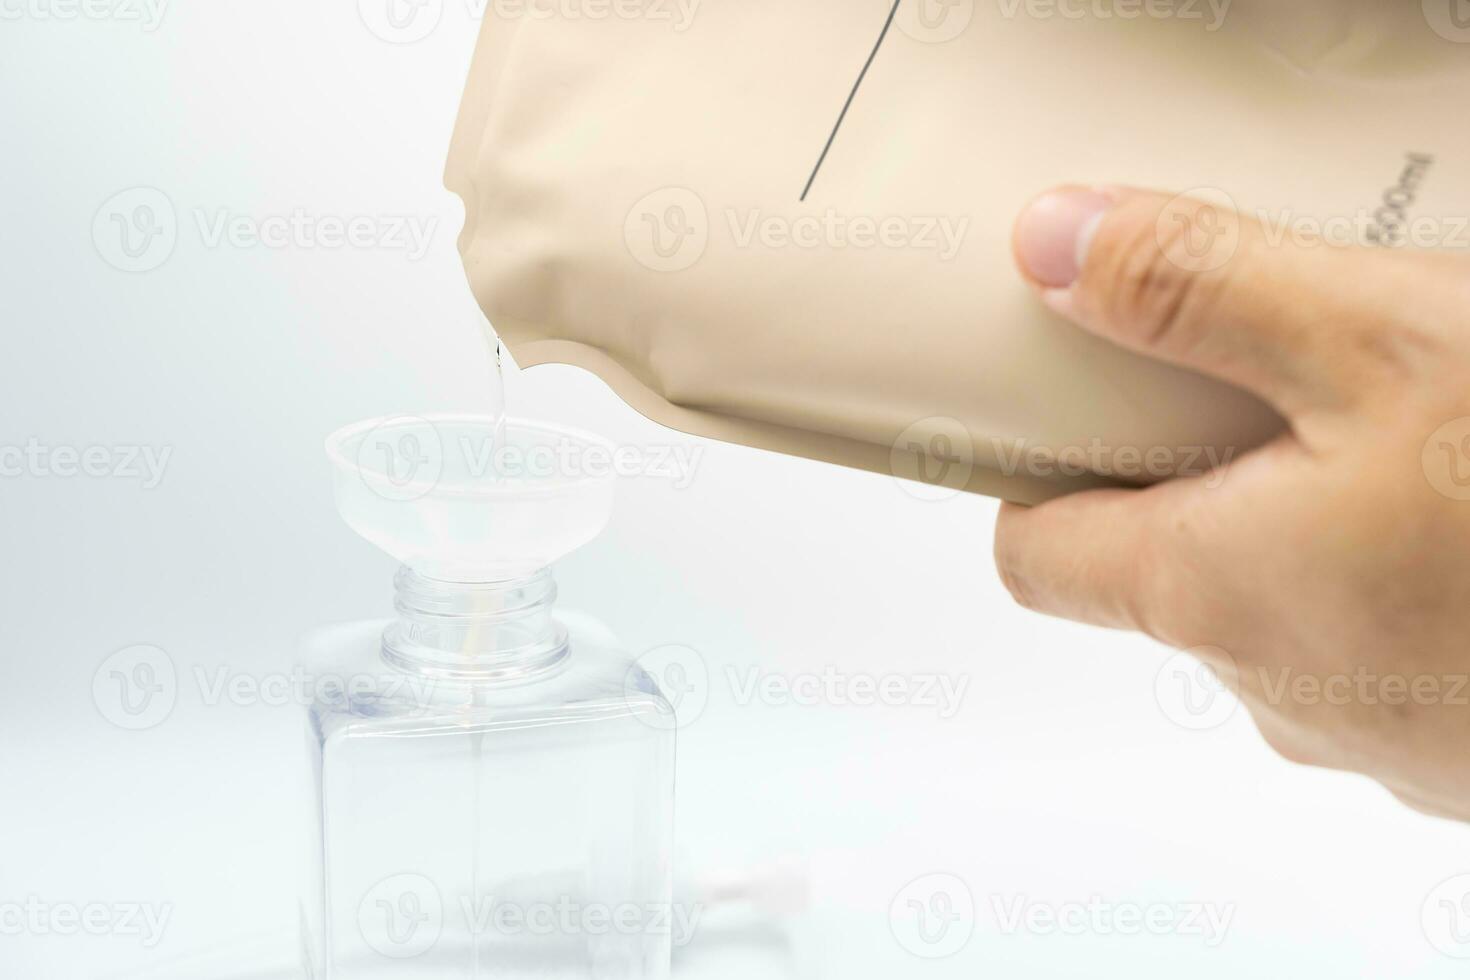 uma homem preenche uma distribuidor com líquido Sabonete de derramando isto a partir de uma reabastecer para reduzir plástico desperdício. Sabonete ou xampu para refil. foto